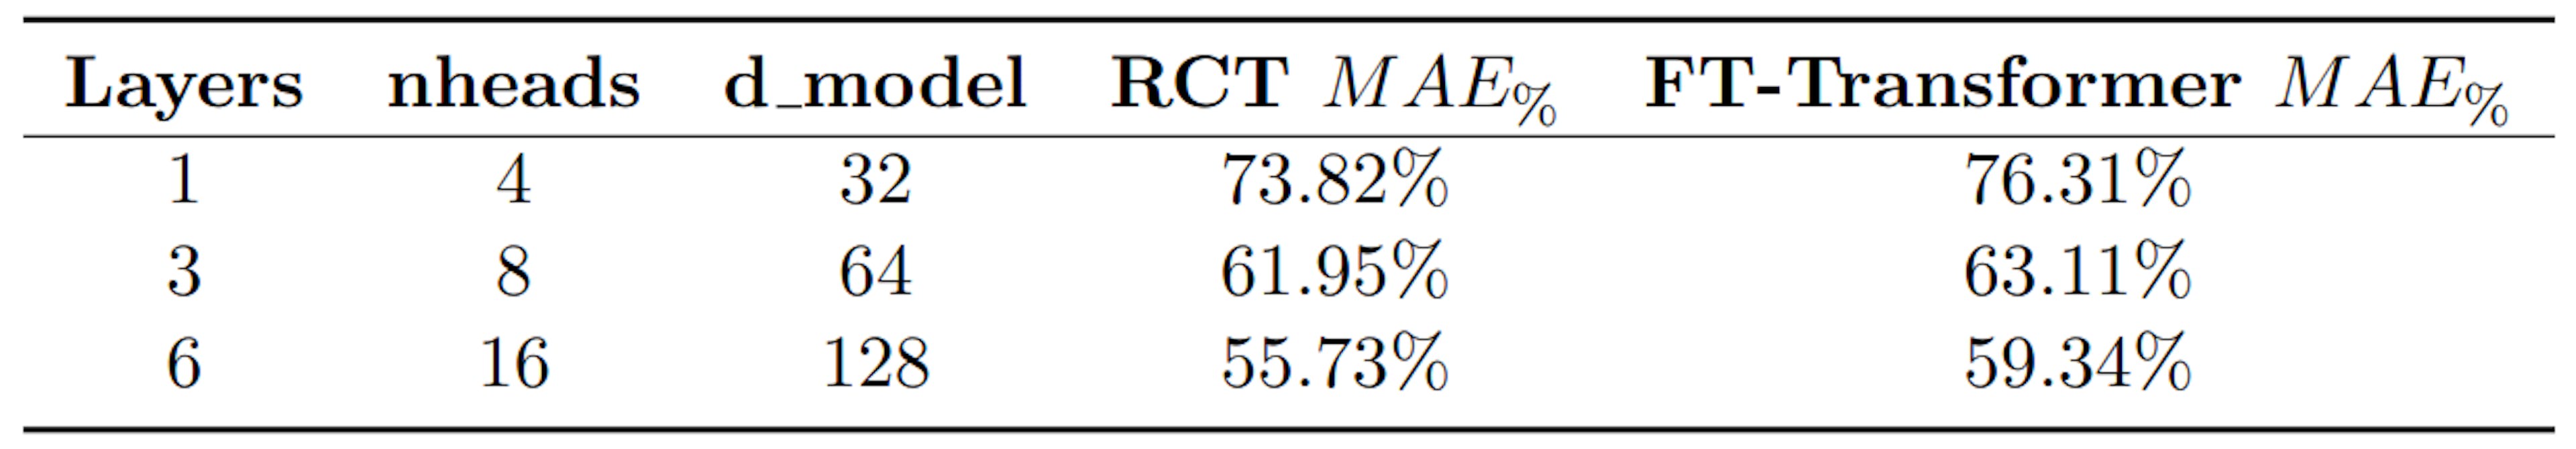 Tabela 2: Comparação MAE% entre RCT e FT-Transformer (SOTA para modelos de autoatenção)